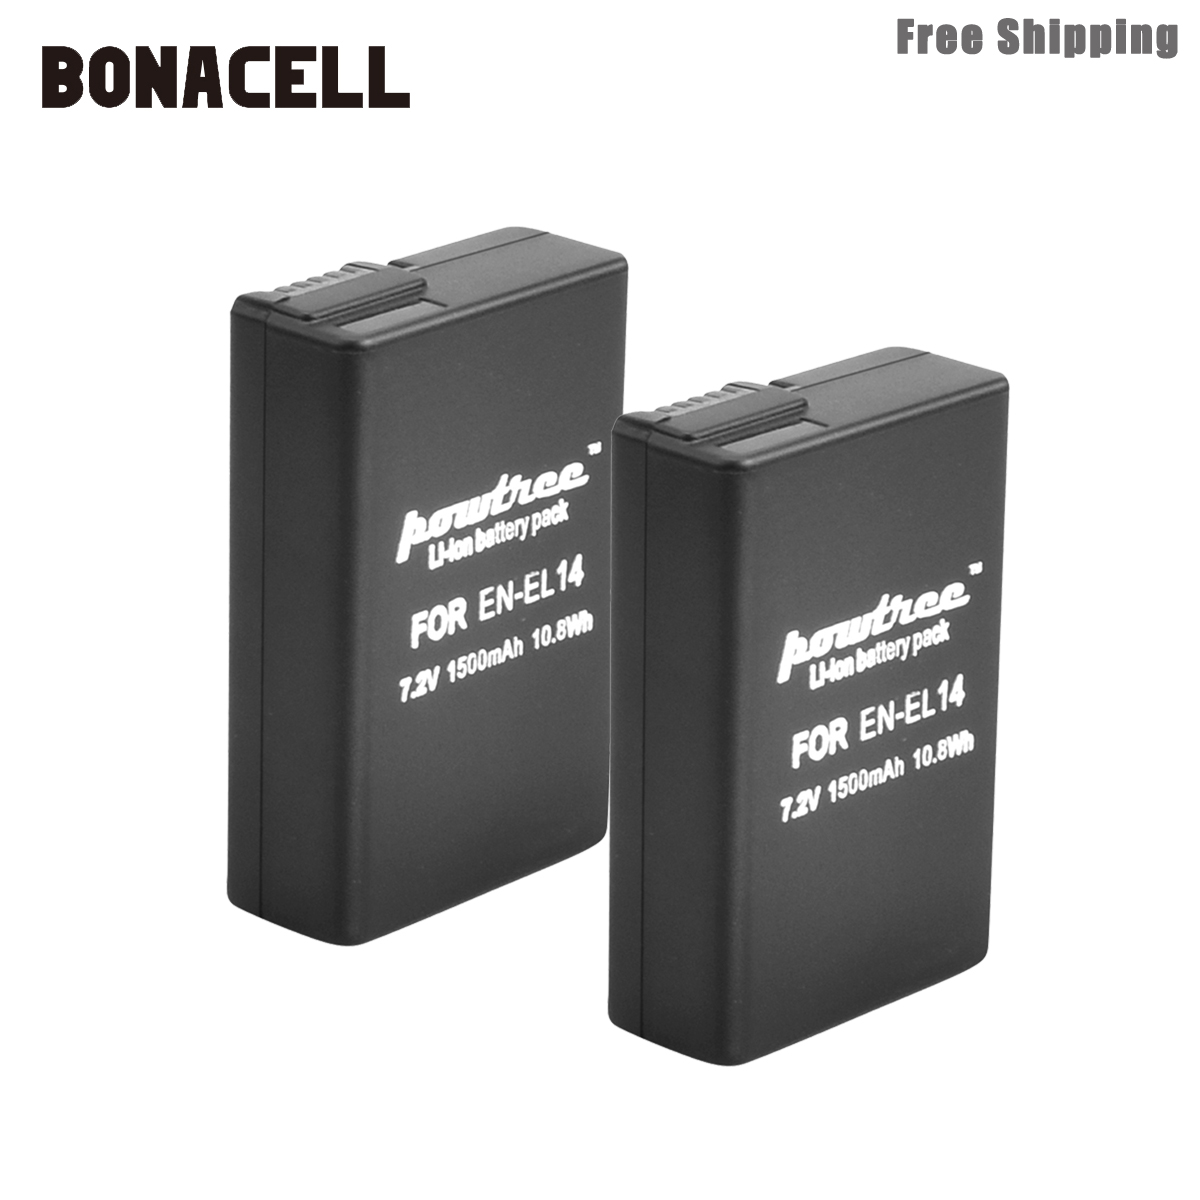 Bonacell 1500mAh EN-EL14 EN-EL14a ENEL14 EL14 Batterij voor Nikon P7800, P7700, P7100, P7000, D5500, d5300, D5200, D3200, D3300, D5100 L50